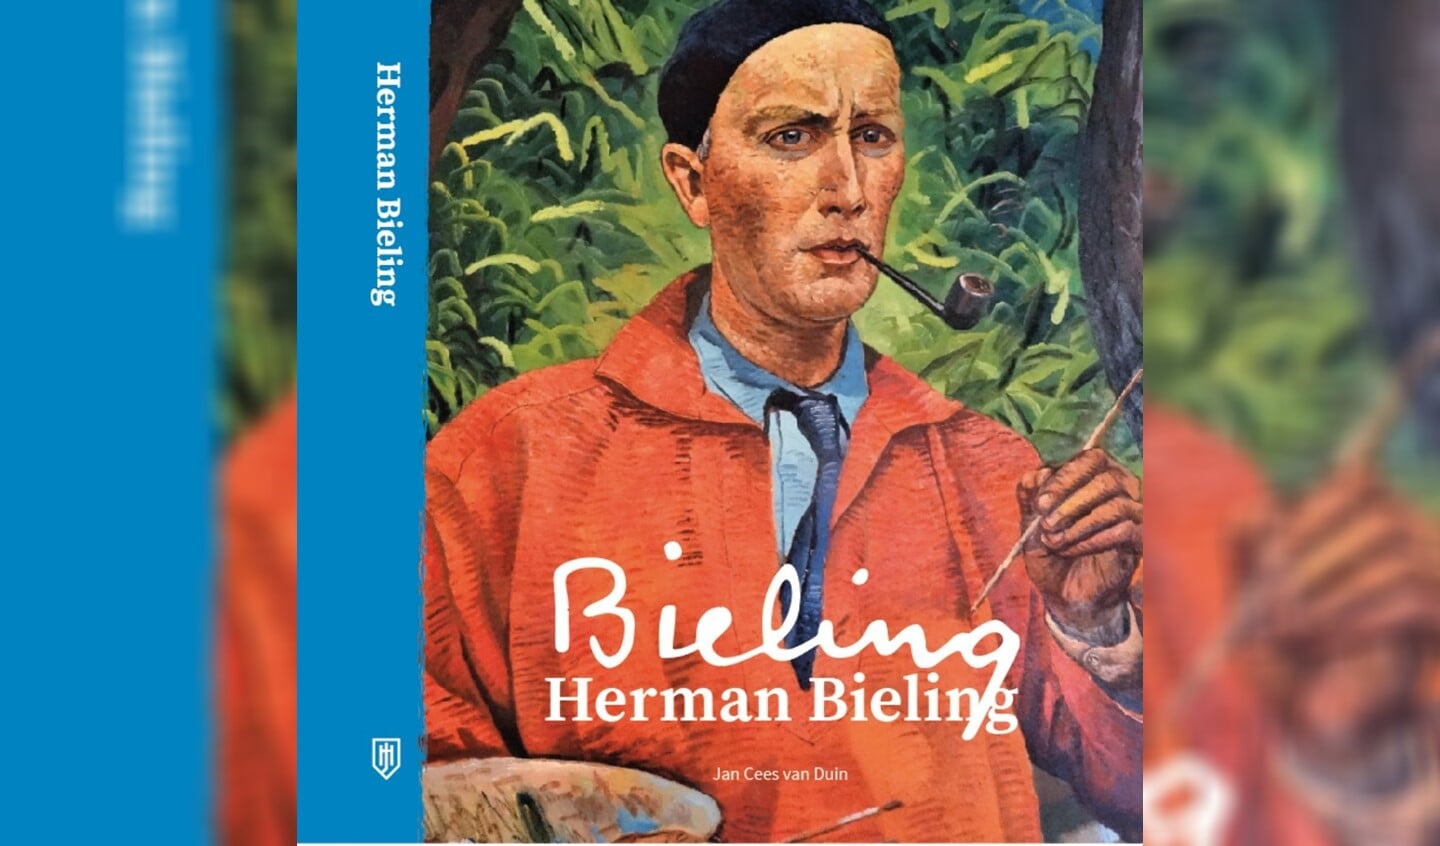 Het boek over Herman Bieling van Jan Cees van Duin